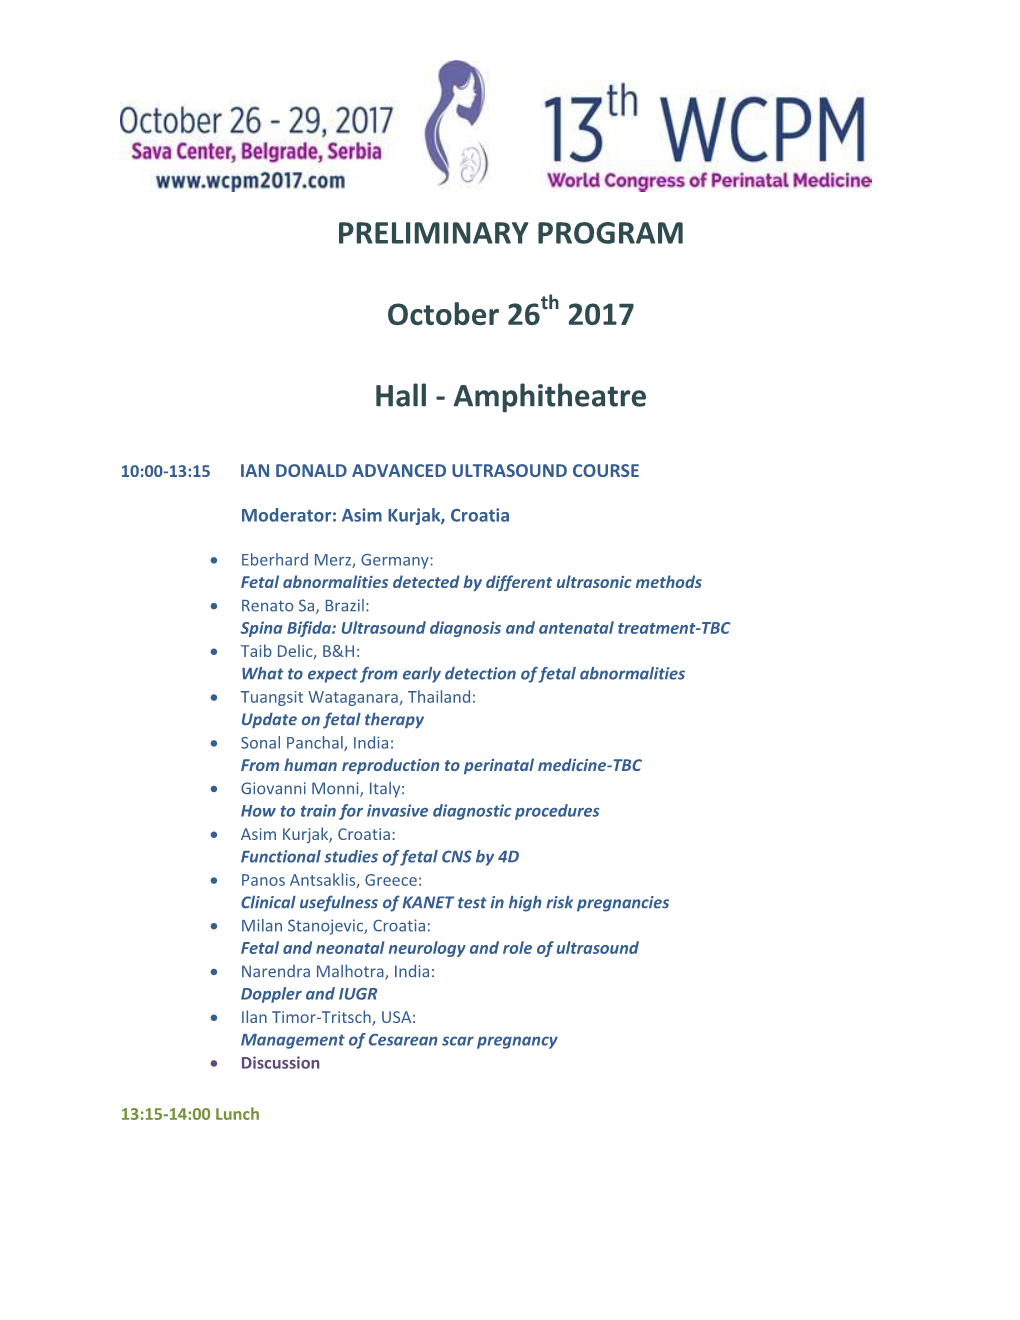 PRELIMINARY PROGRAM October 26 2017 Hall